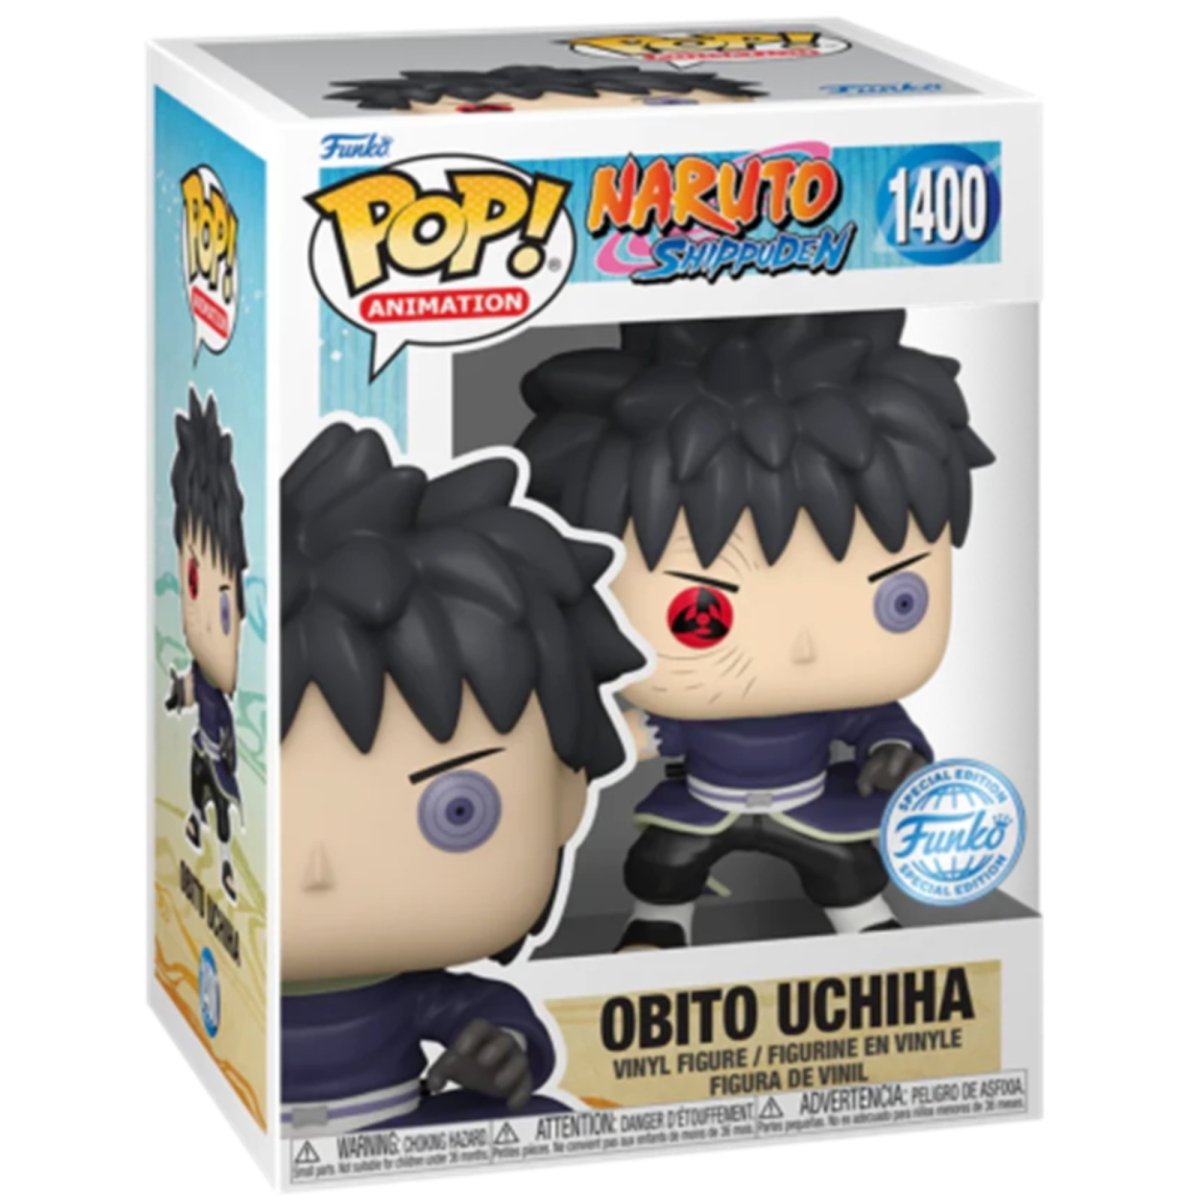 Naruto Shippuden - Obito Uchiha (Special Edition) #1400 - Funko Pop! Vinyl Anime - Persona Toys